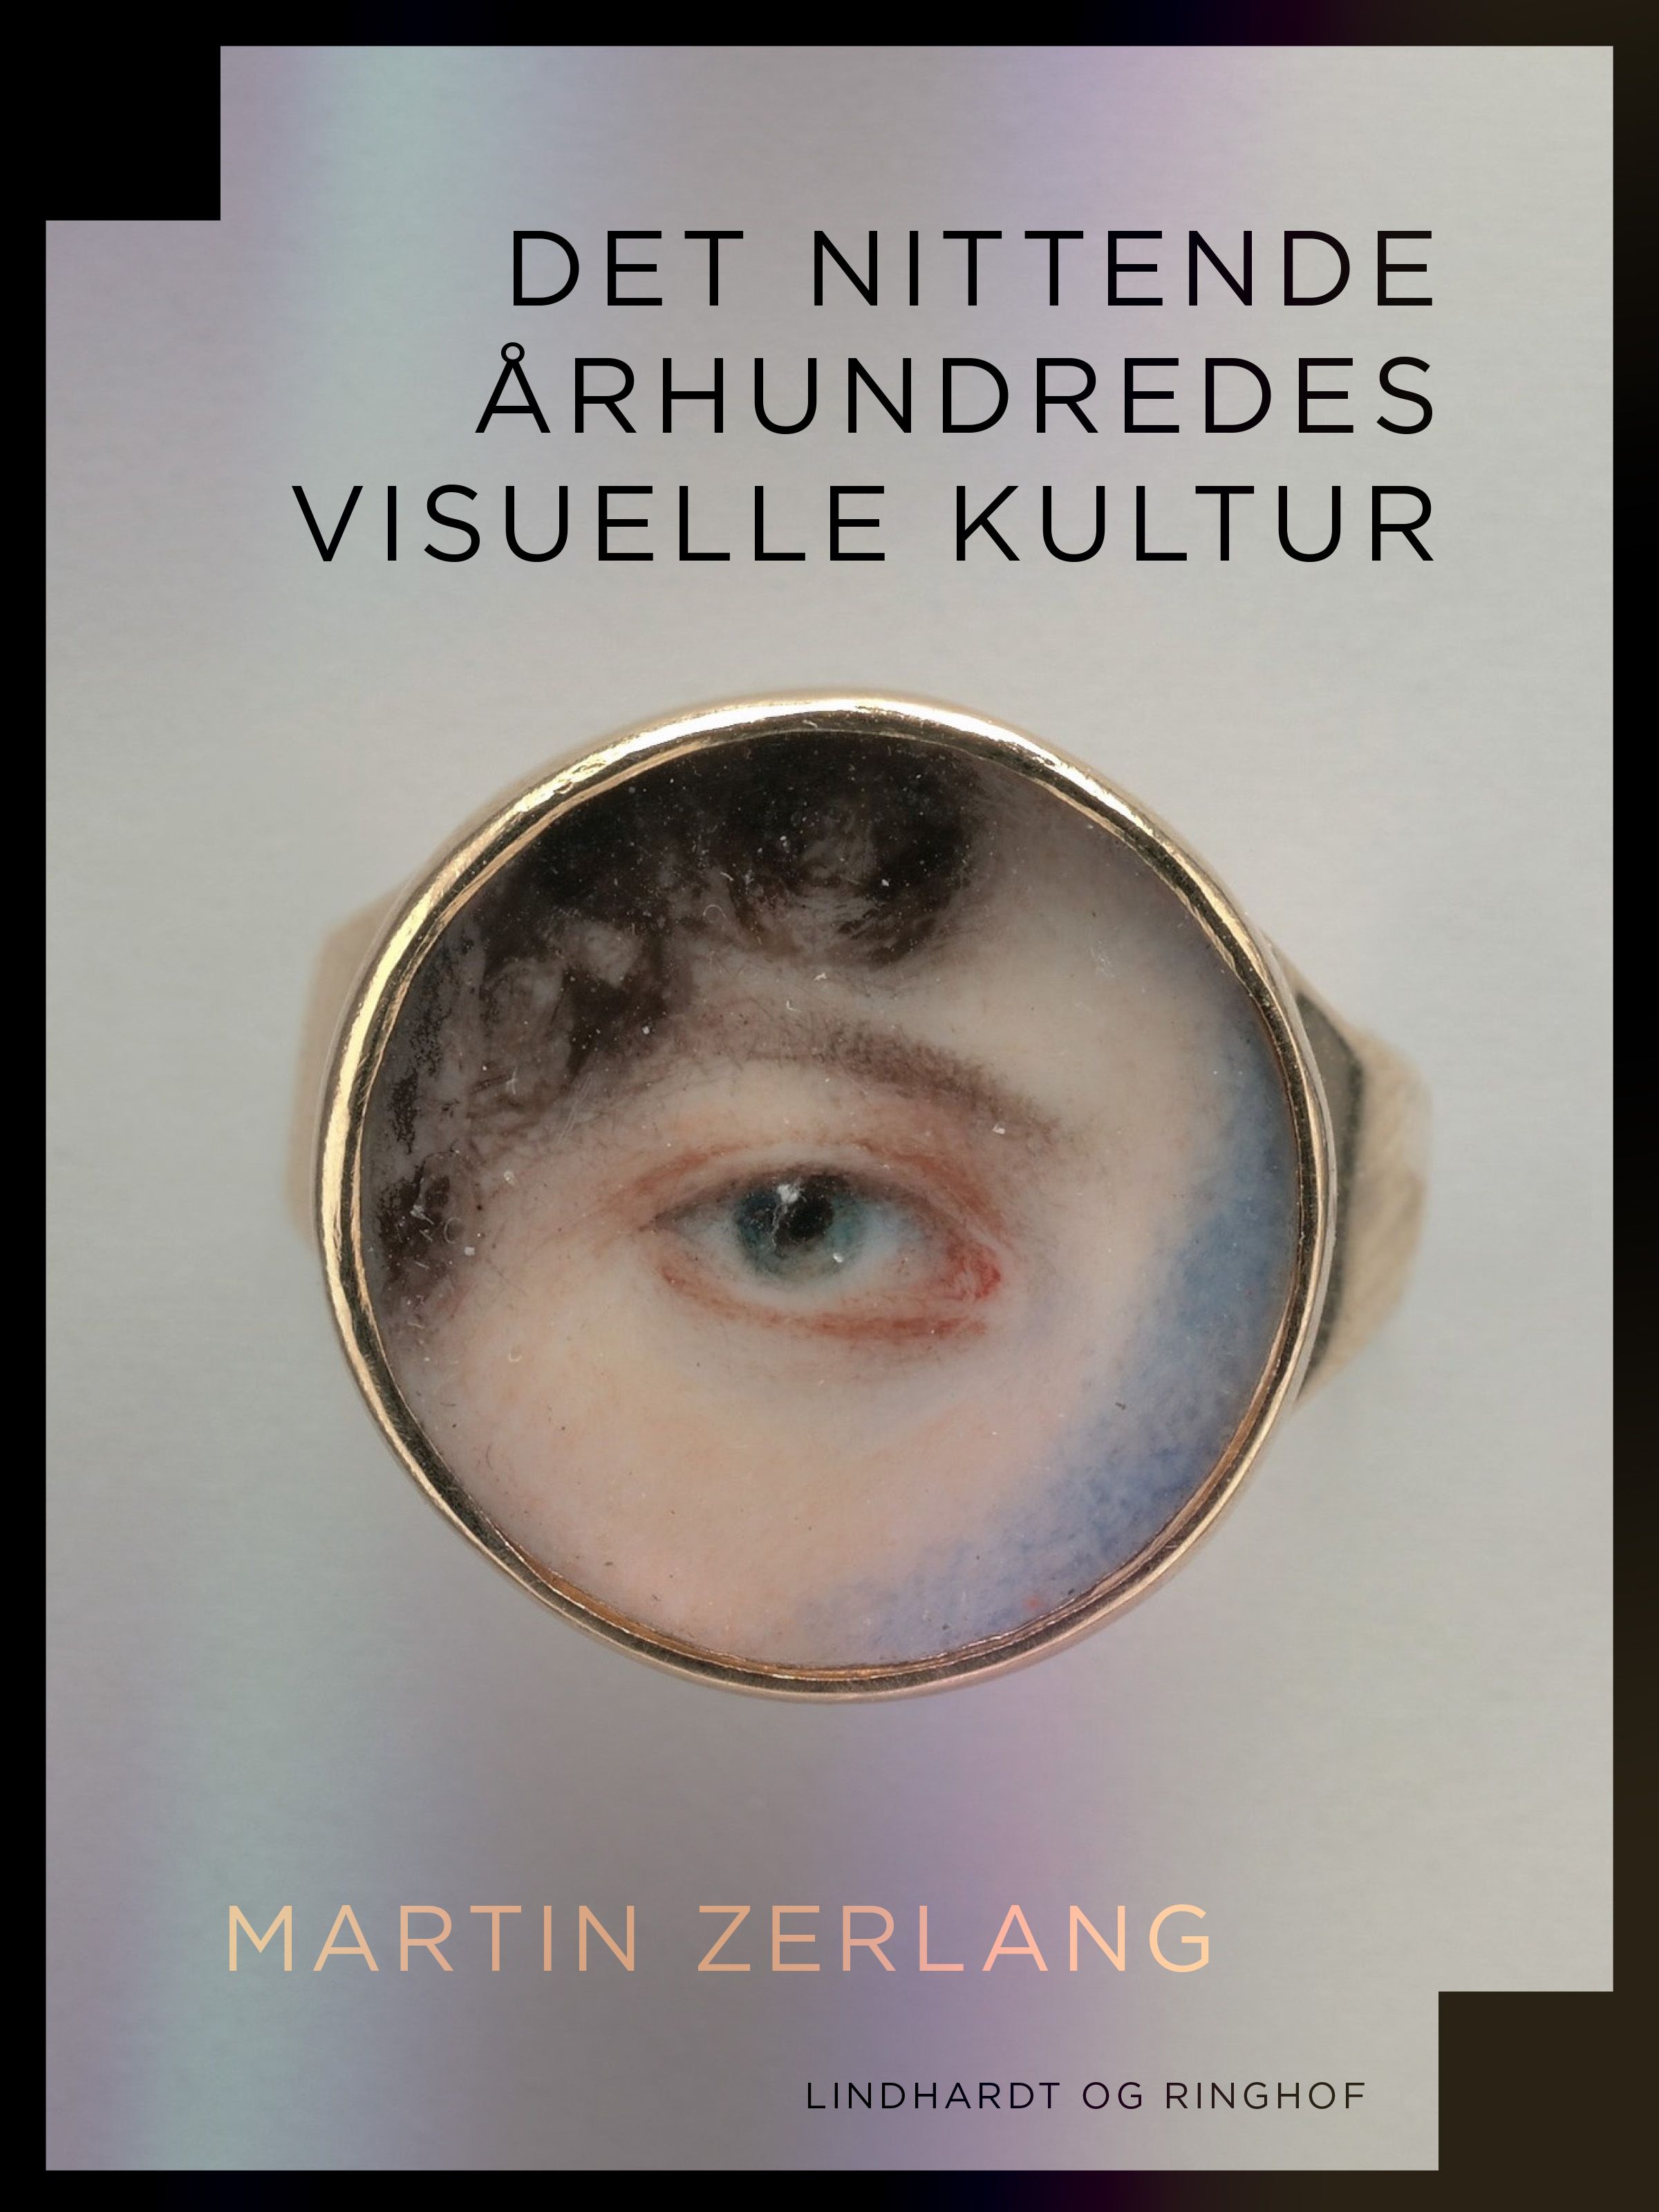 Det nittende århundredes visuelle kultur, e-bog af Martin Zerlang